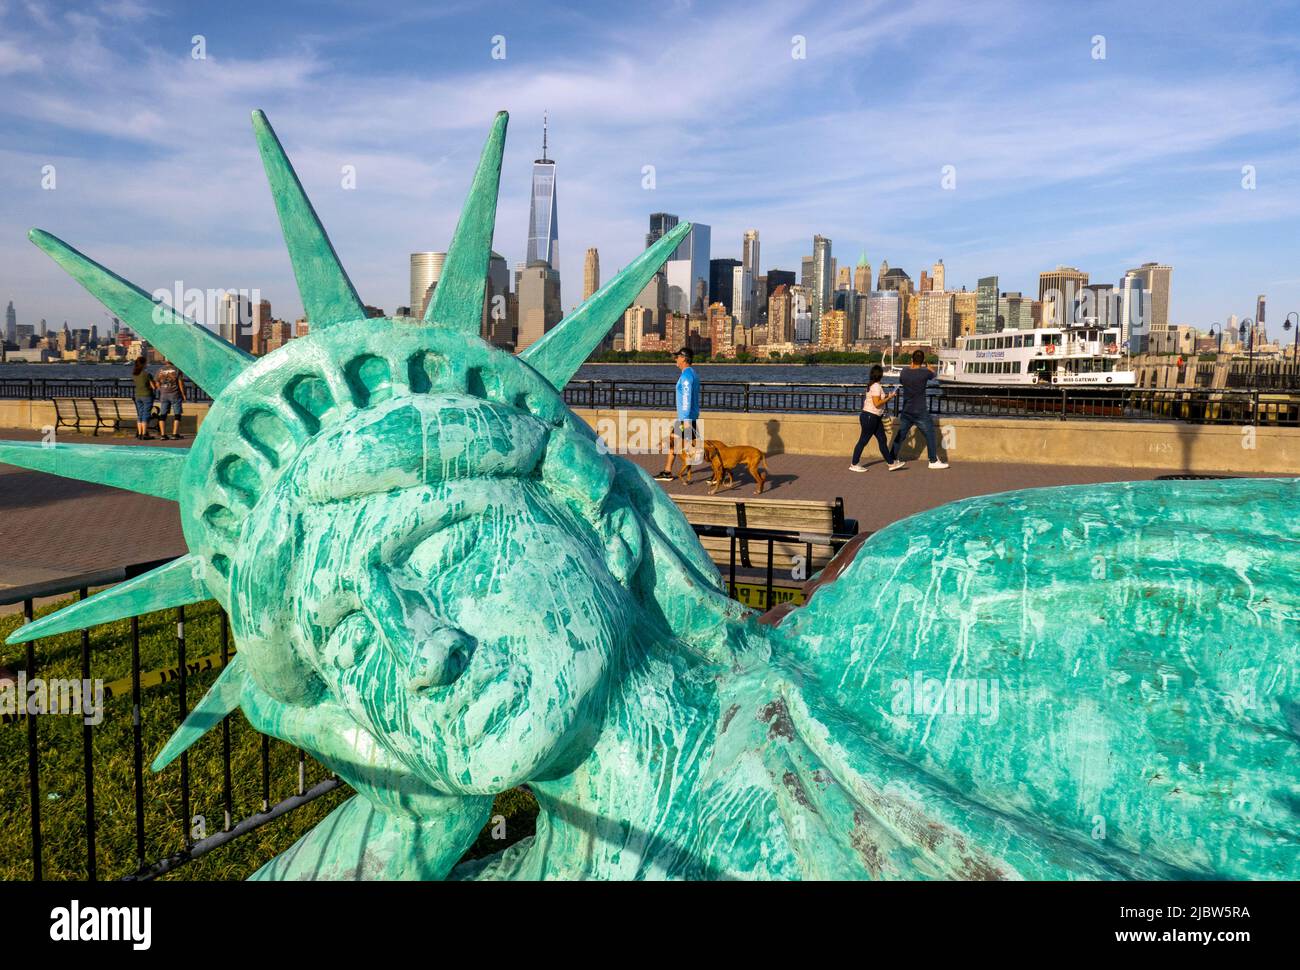 Estatua de libertad reclinada fotografías imágenes de alta resolución - Alamy